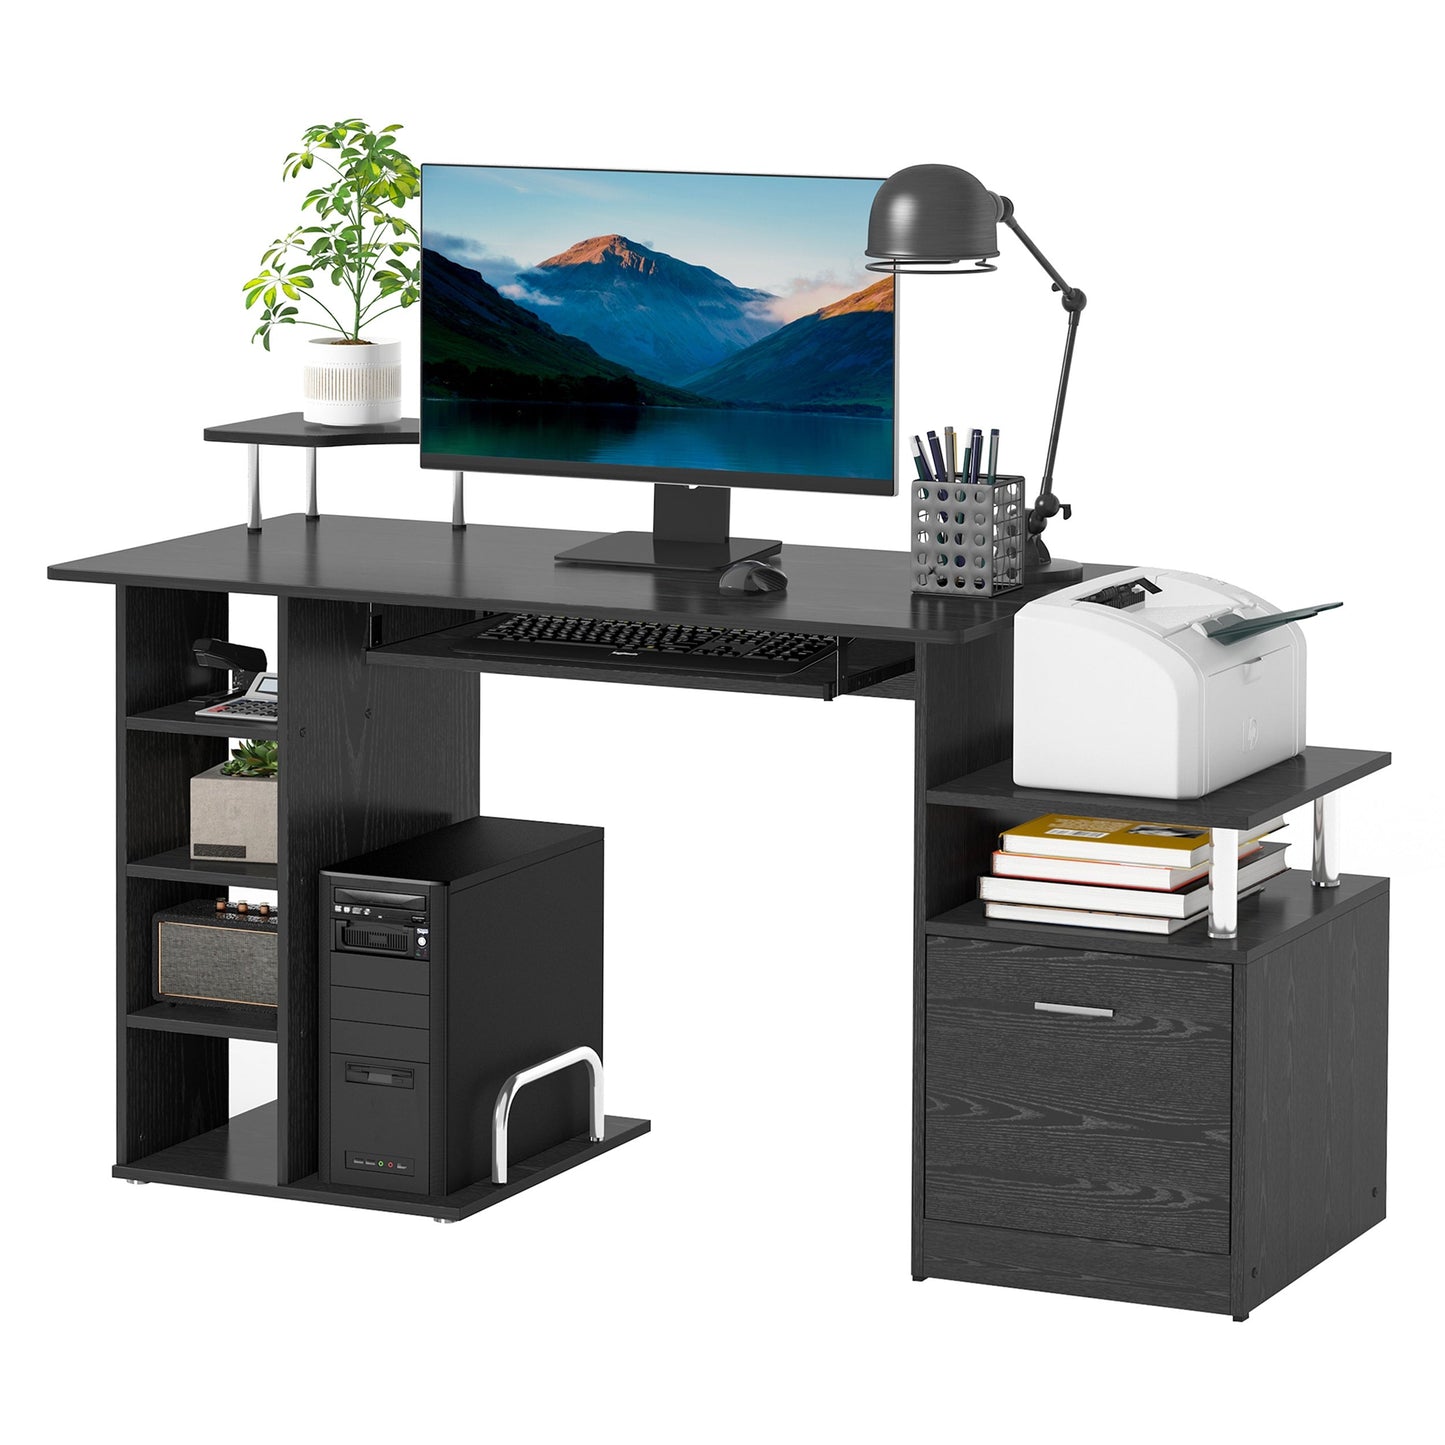 ProperAV Extra Computer Desk Workstation Wood Laptop Table with Drawer Shelves - Black - maplin.co.uk